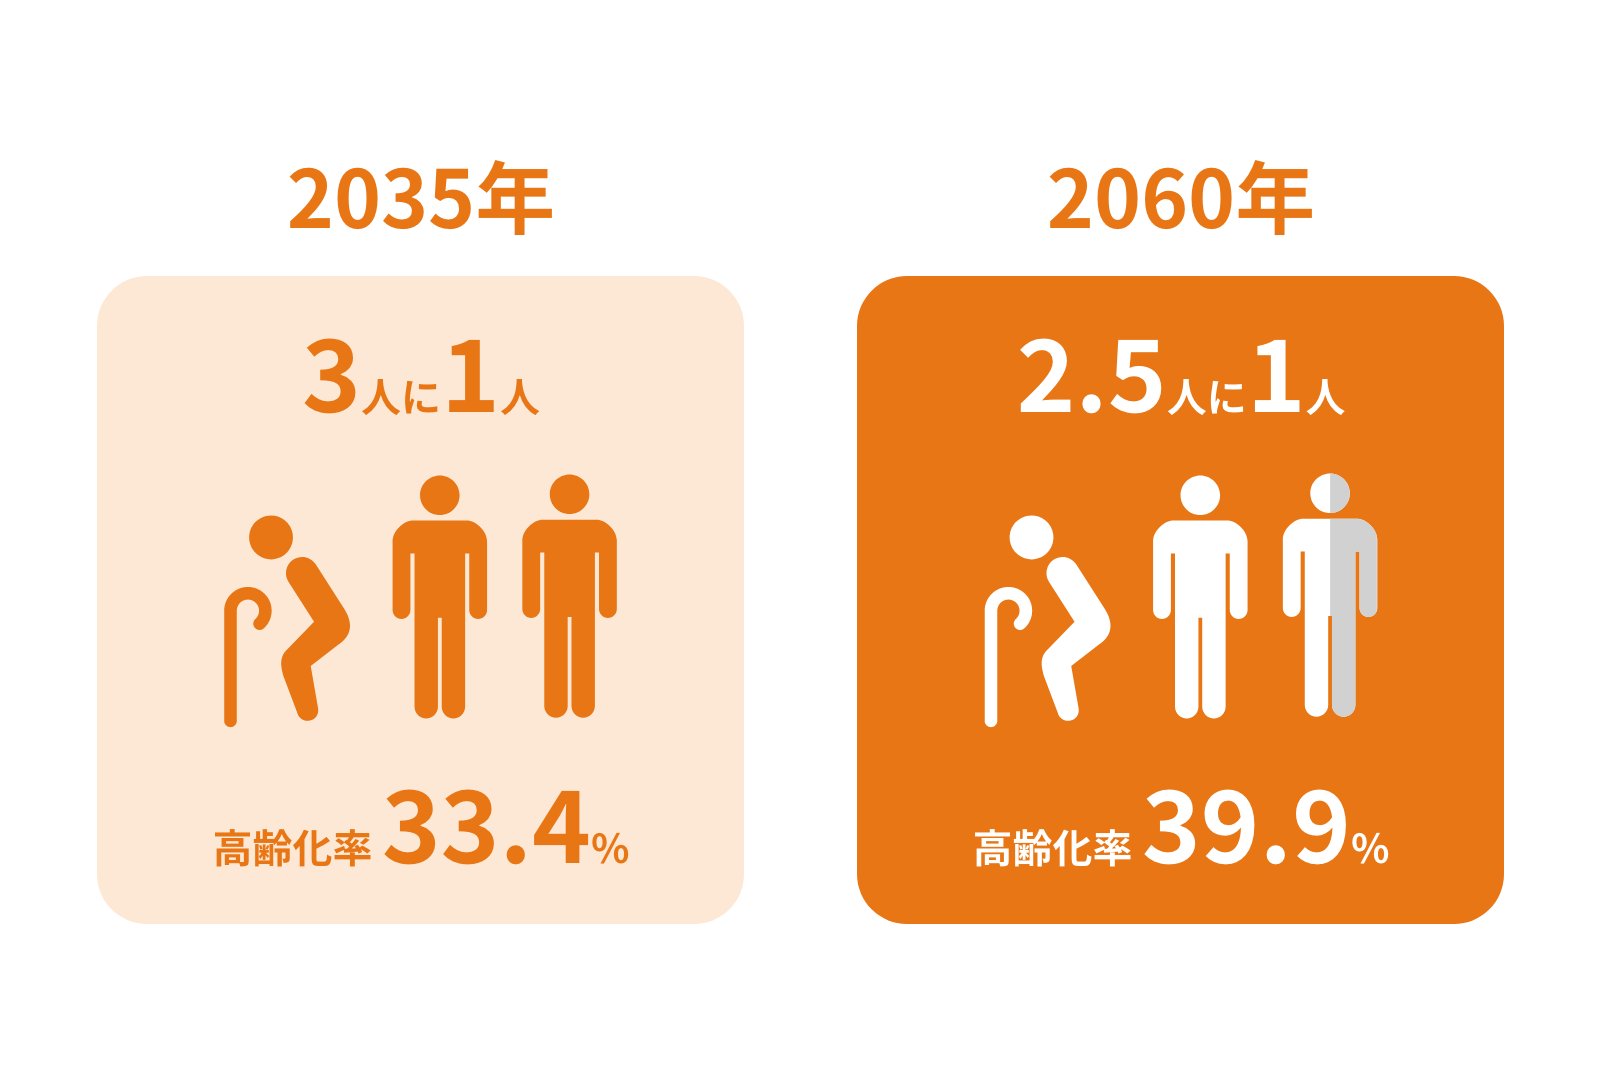 2025年に団塊の世代が後期高齢者になり、2035年には国民のうち3人に1人は65歳以上に